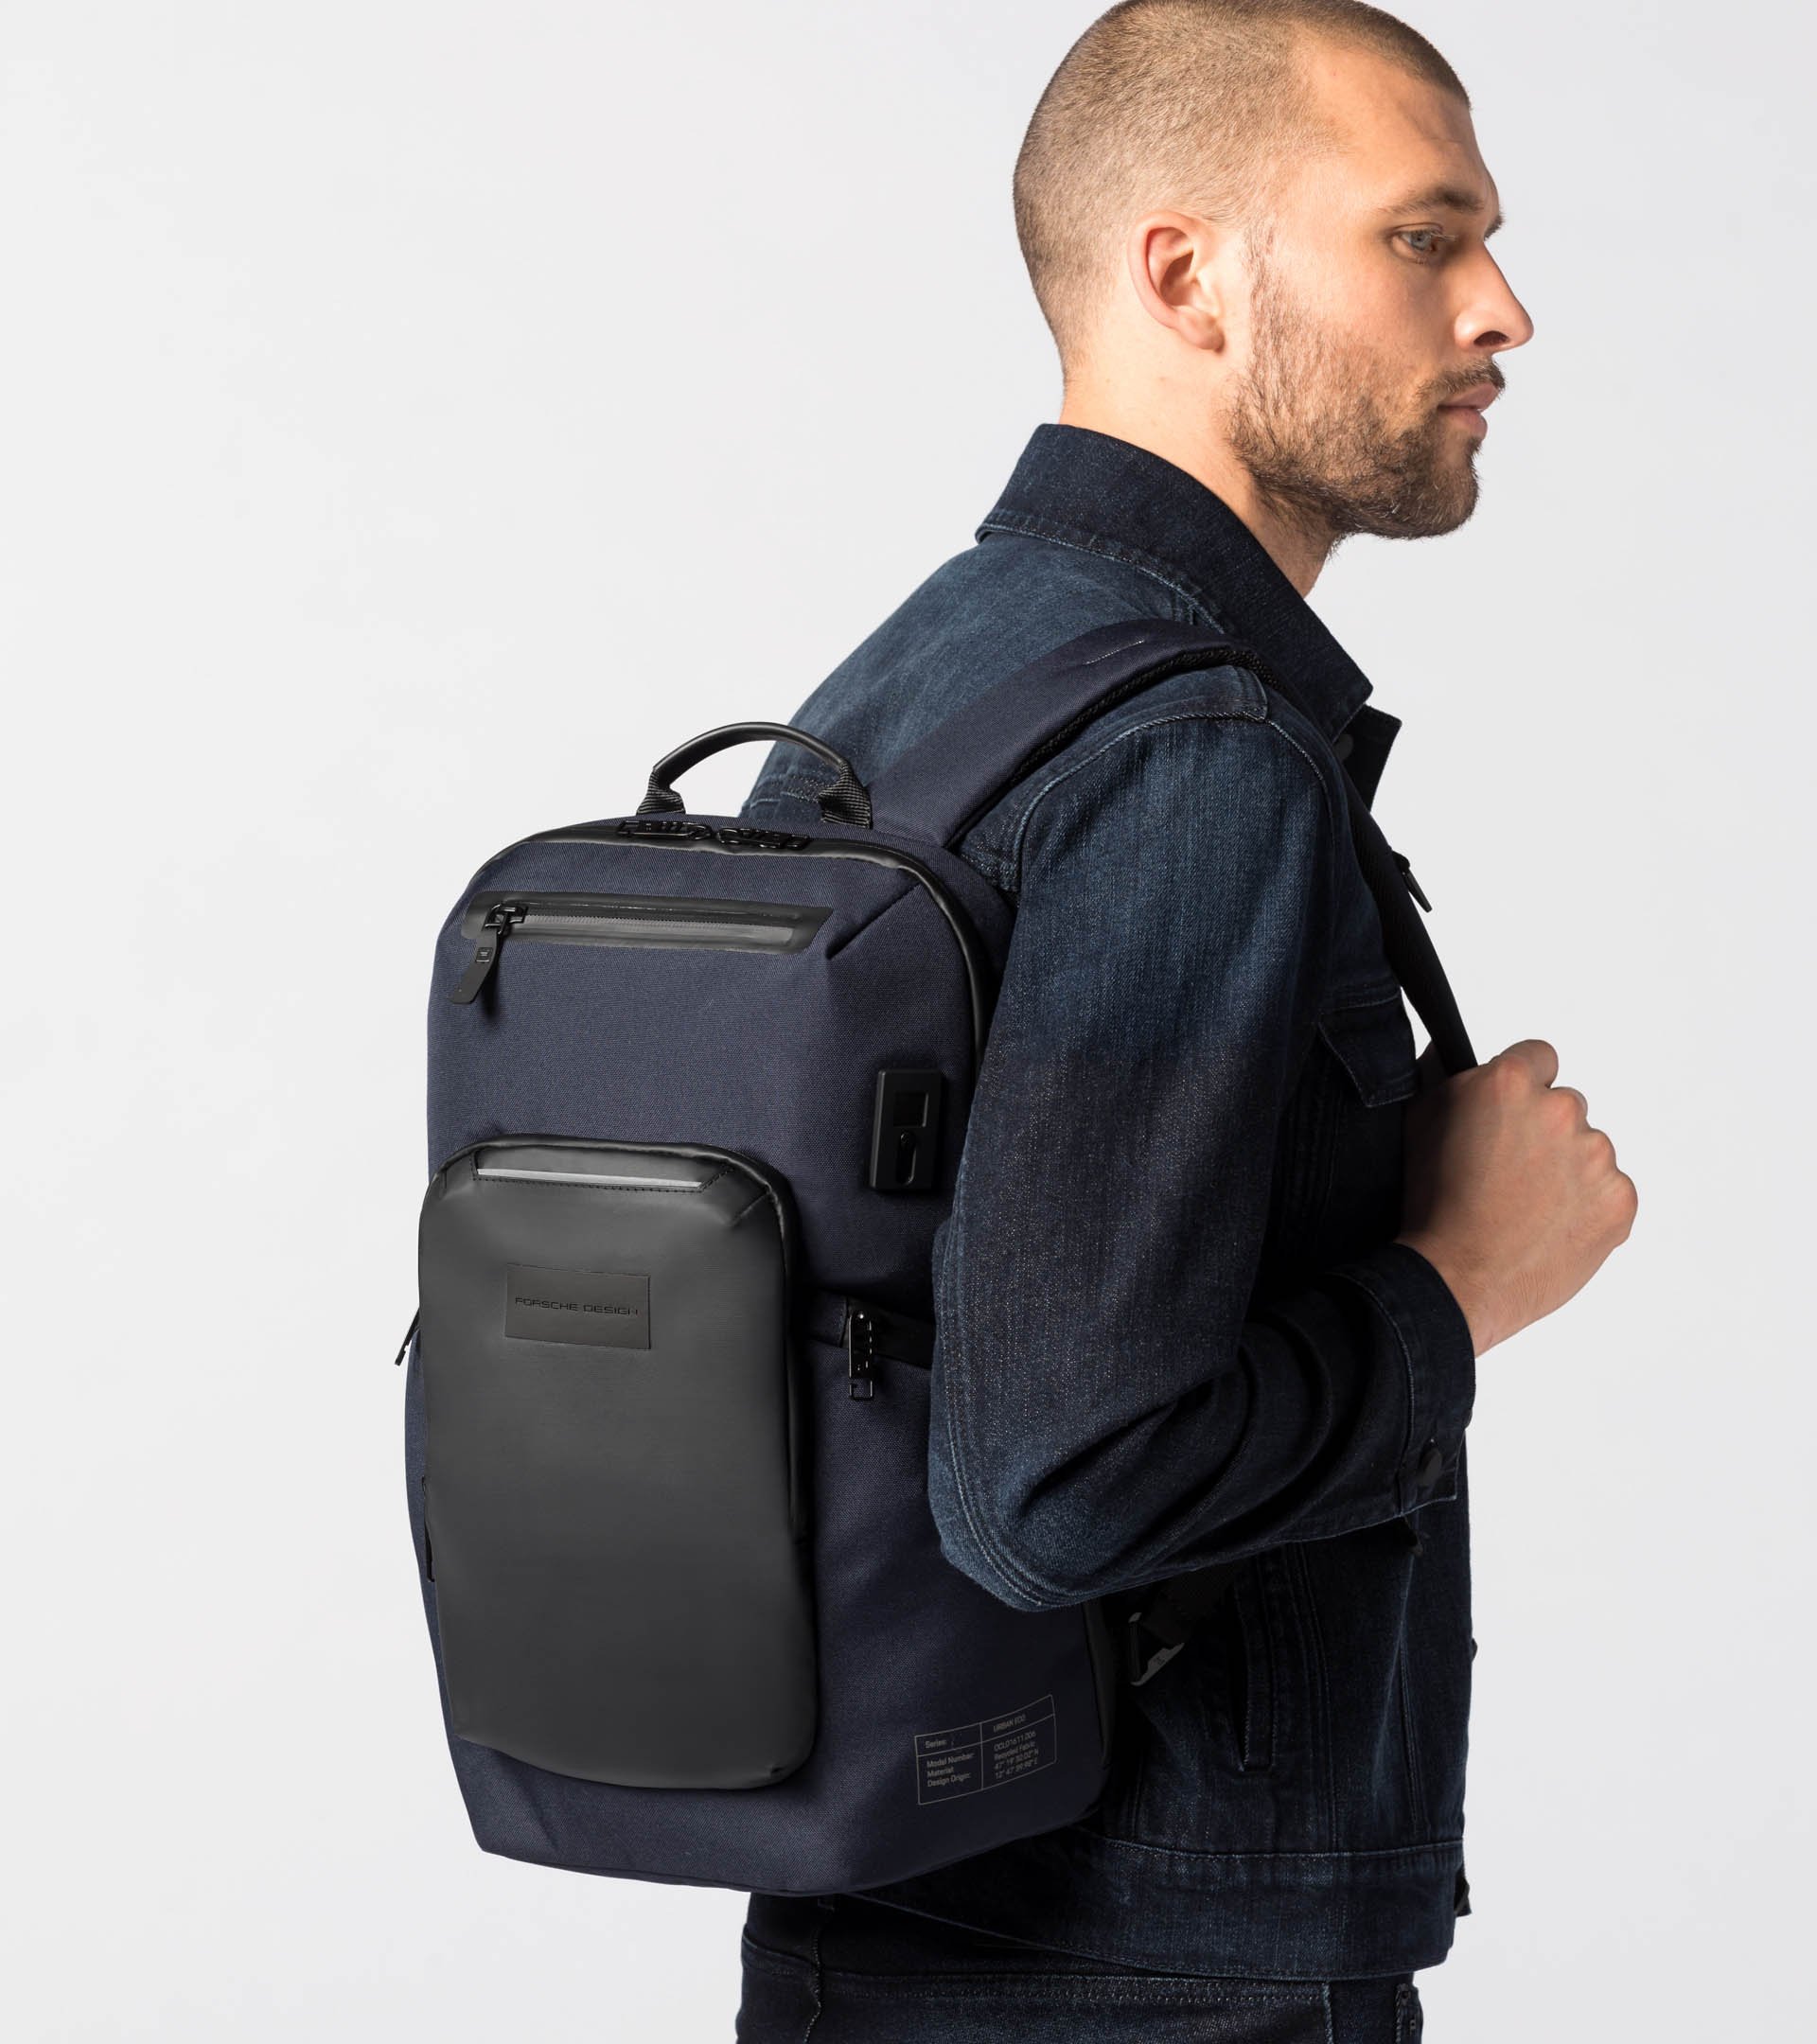 Urban Eco Backpack S - Business Backpack for Men | Porsche Design ...